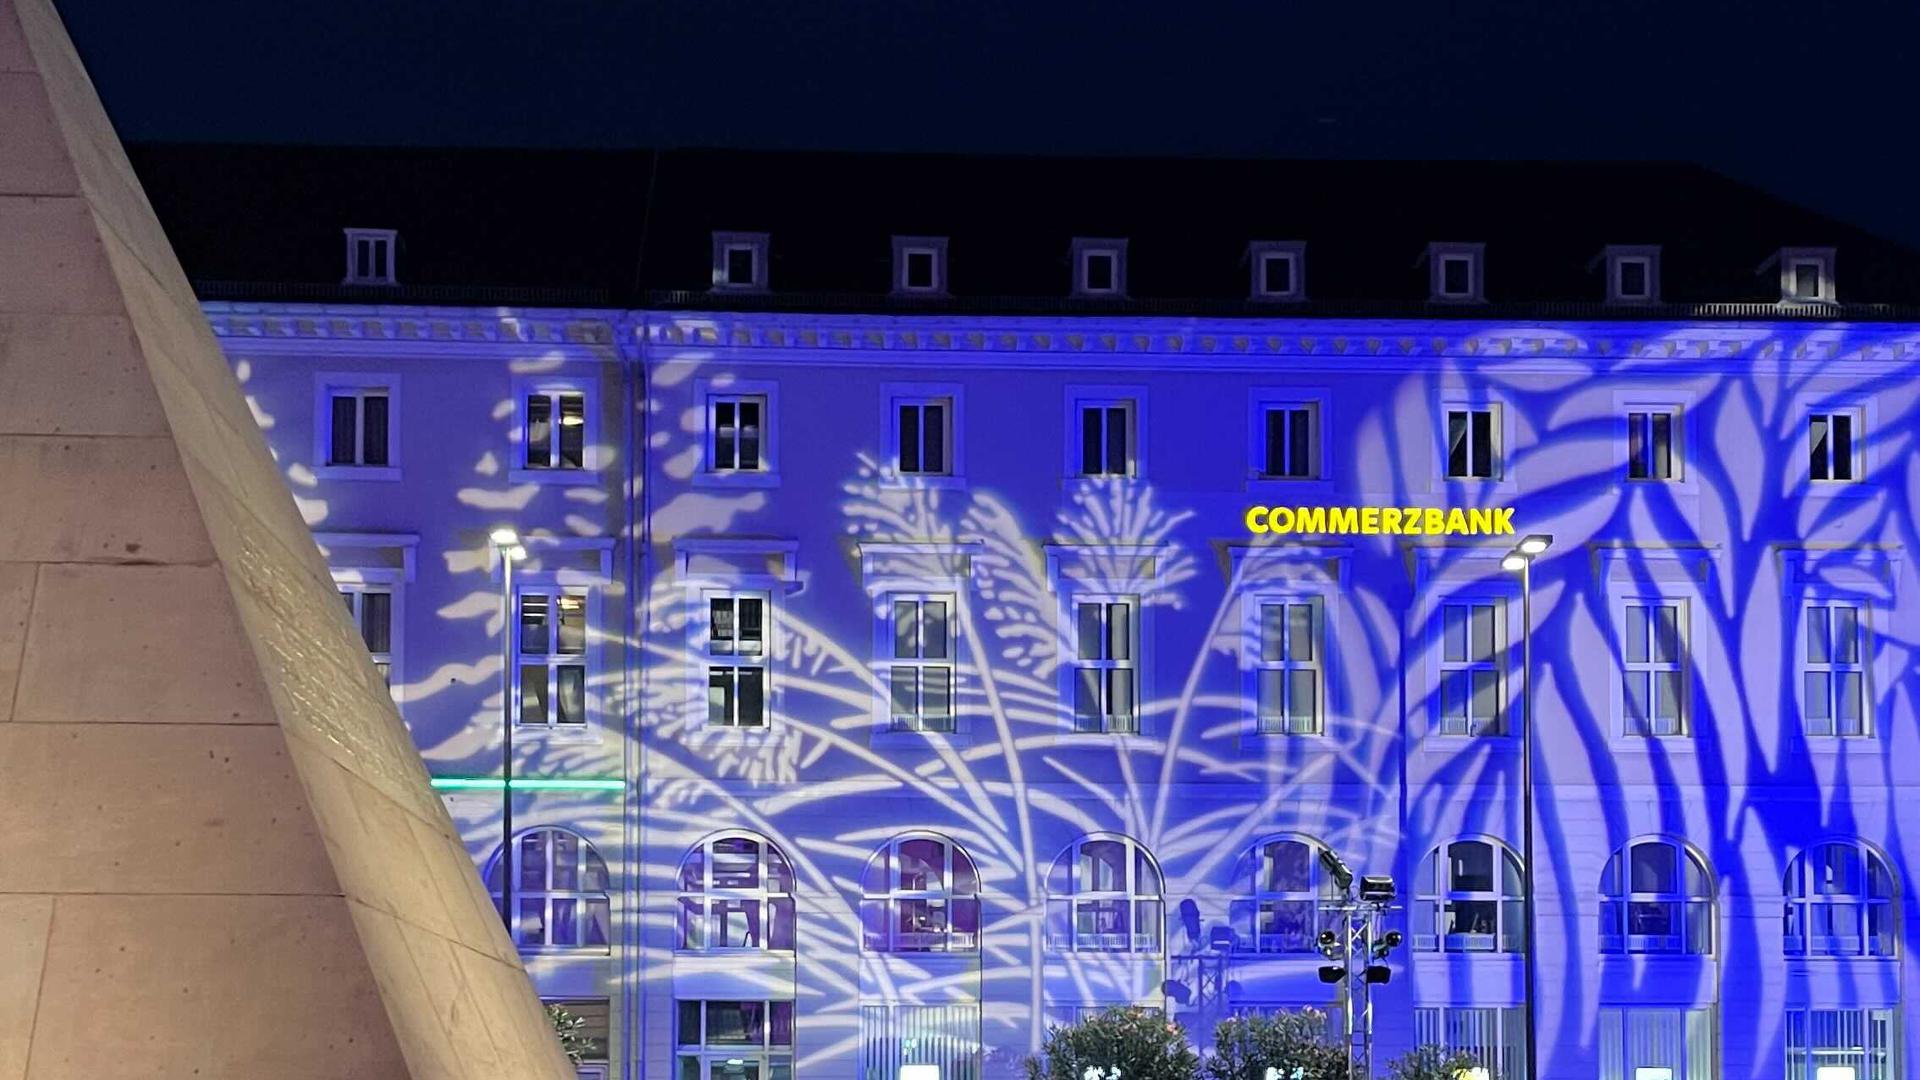 Schlosslichtspiele Karlsruhe 2021